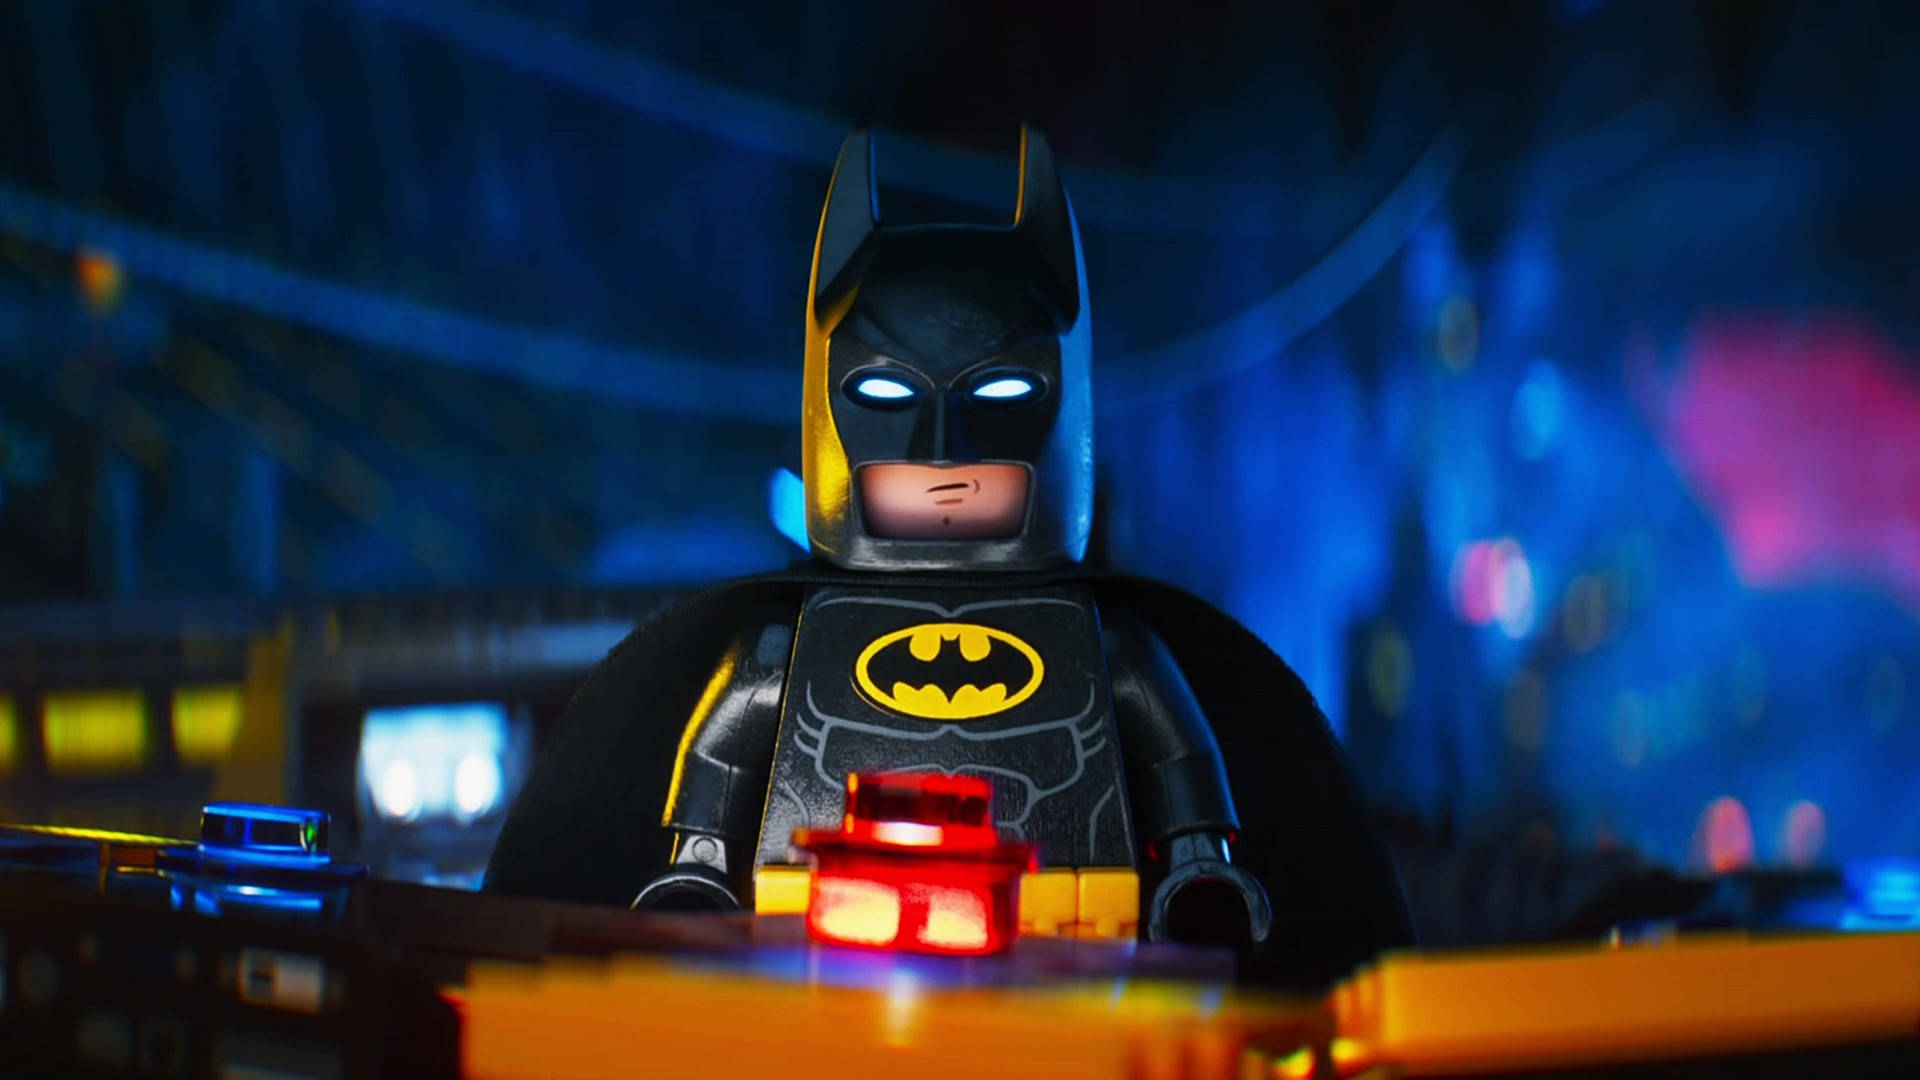 The Lego Batman Movie 3D Wallpaper